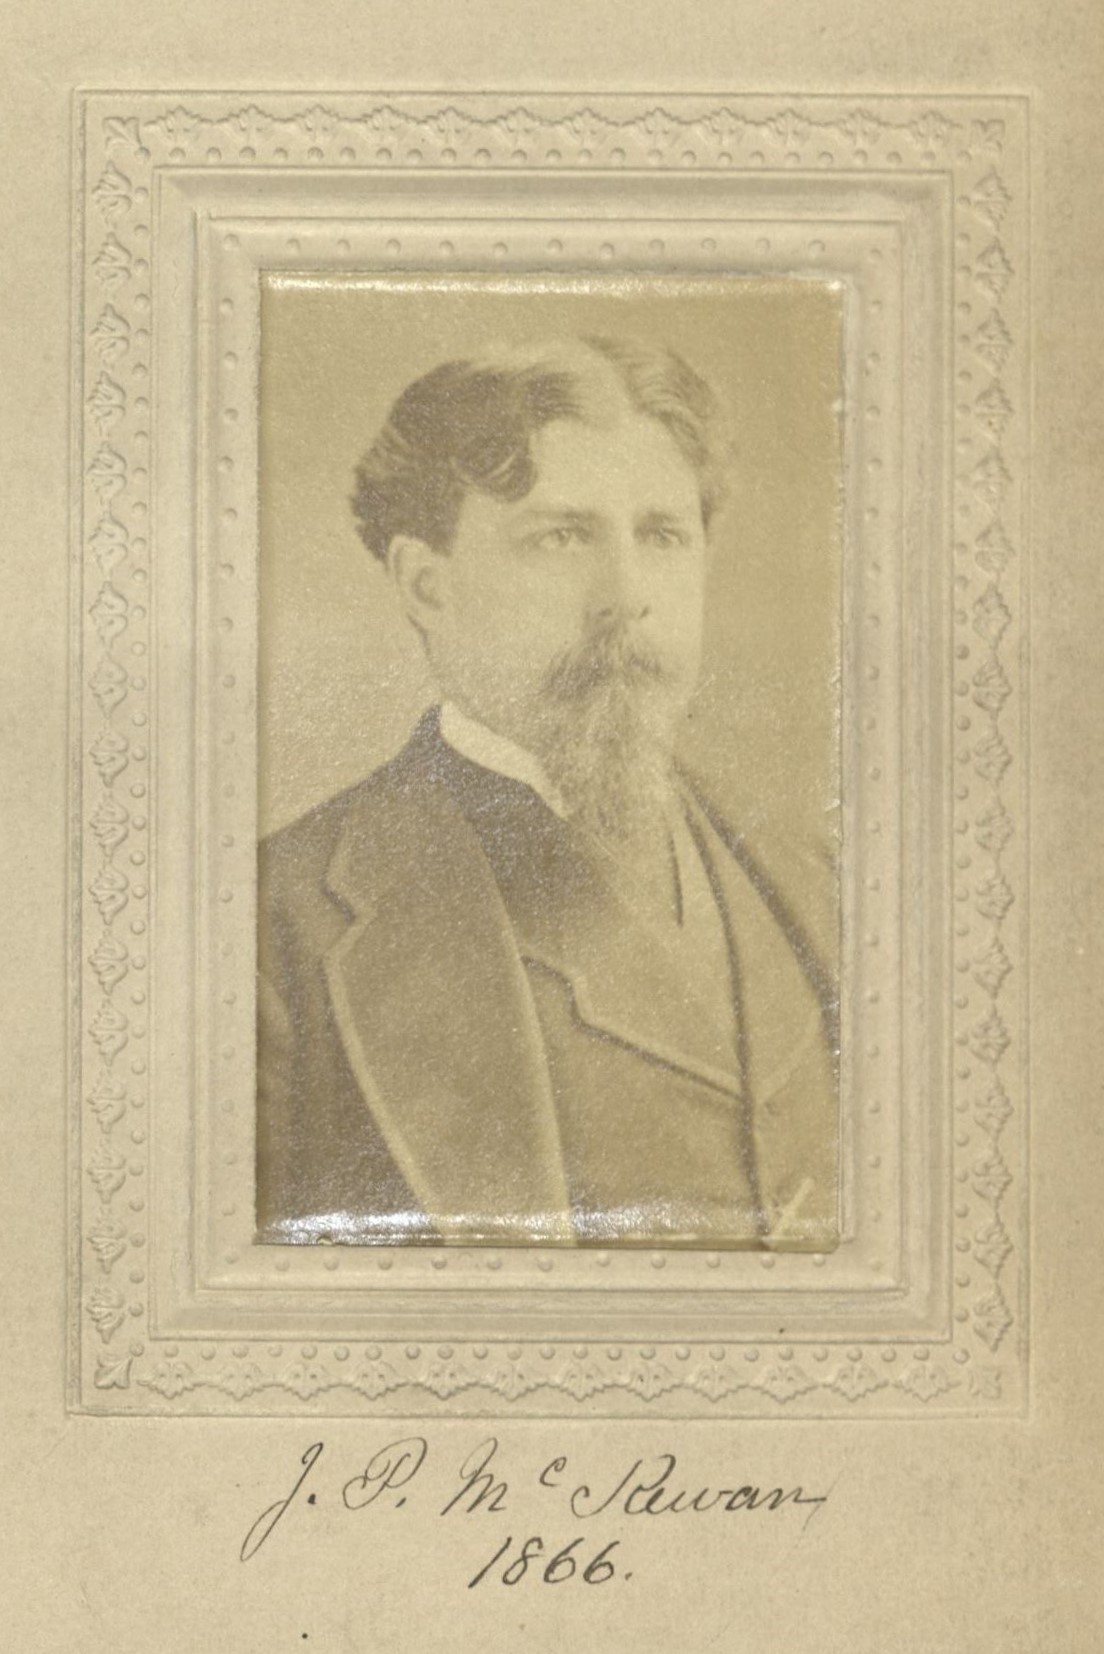 Member portrait of John P. McKewan